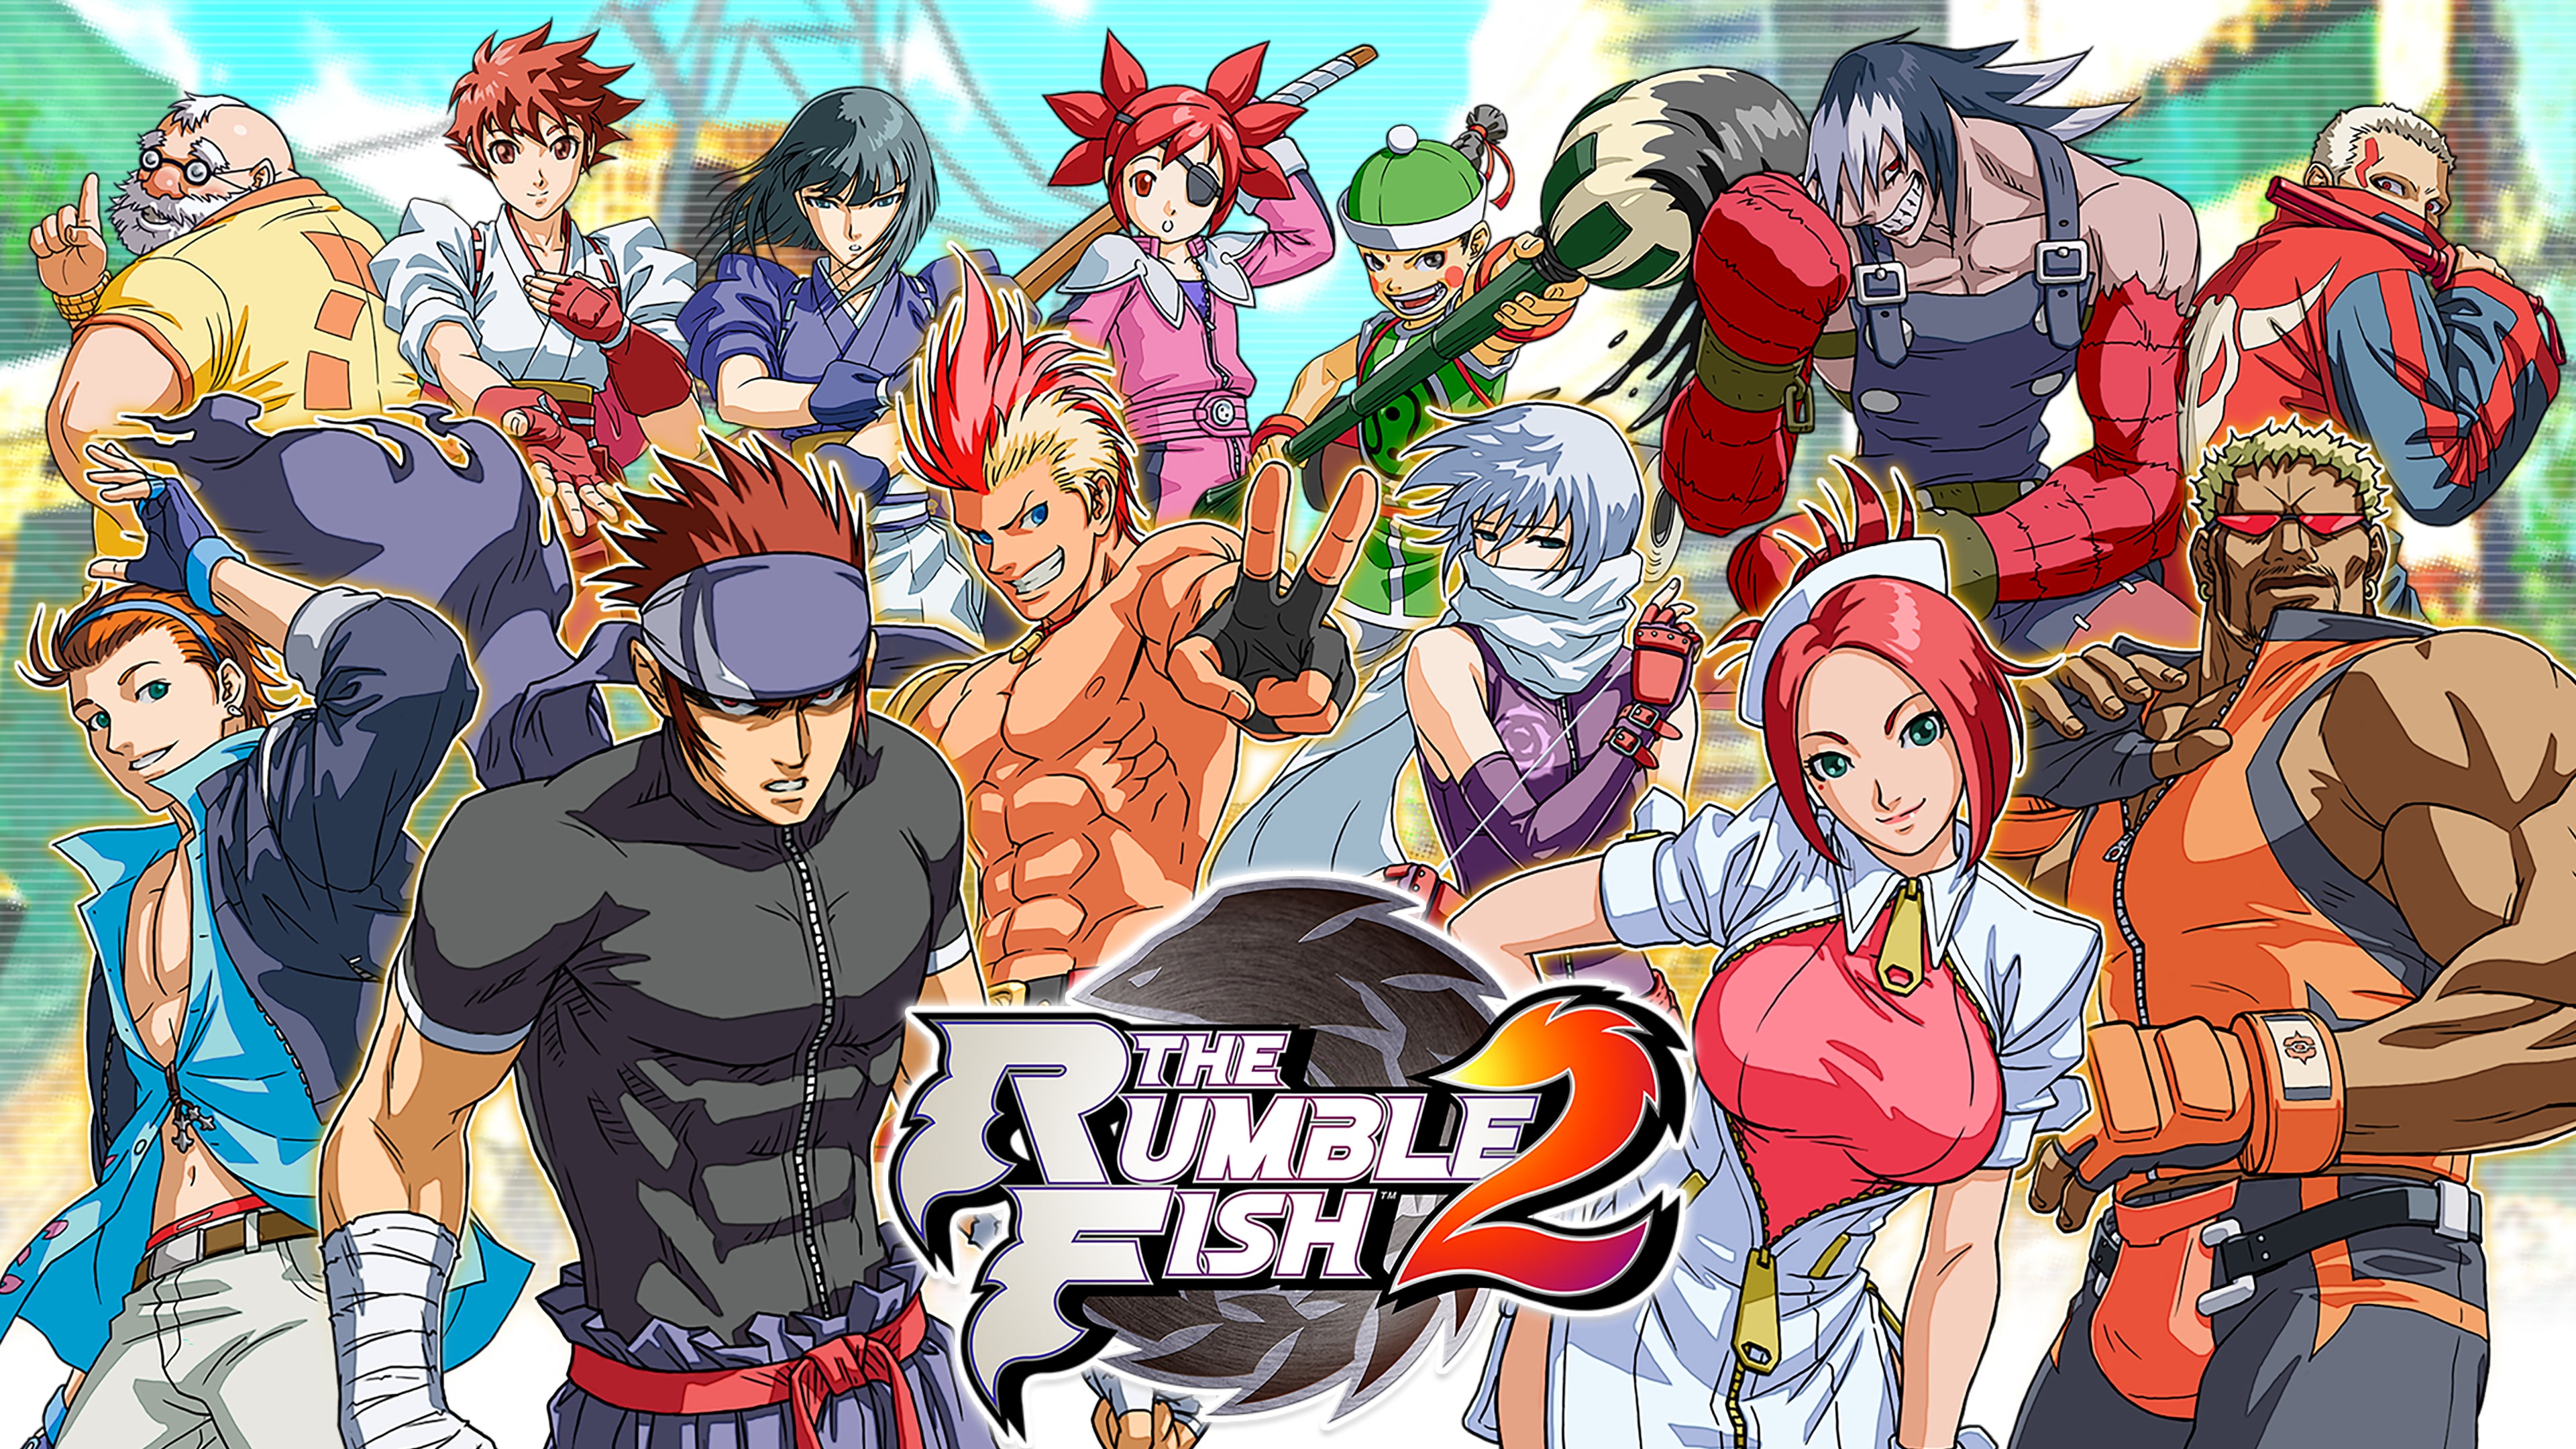 The Rumble Fish 2 (중국어(간체자), 한국어, 영어, 일본어, 중국어(번체자))